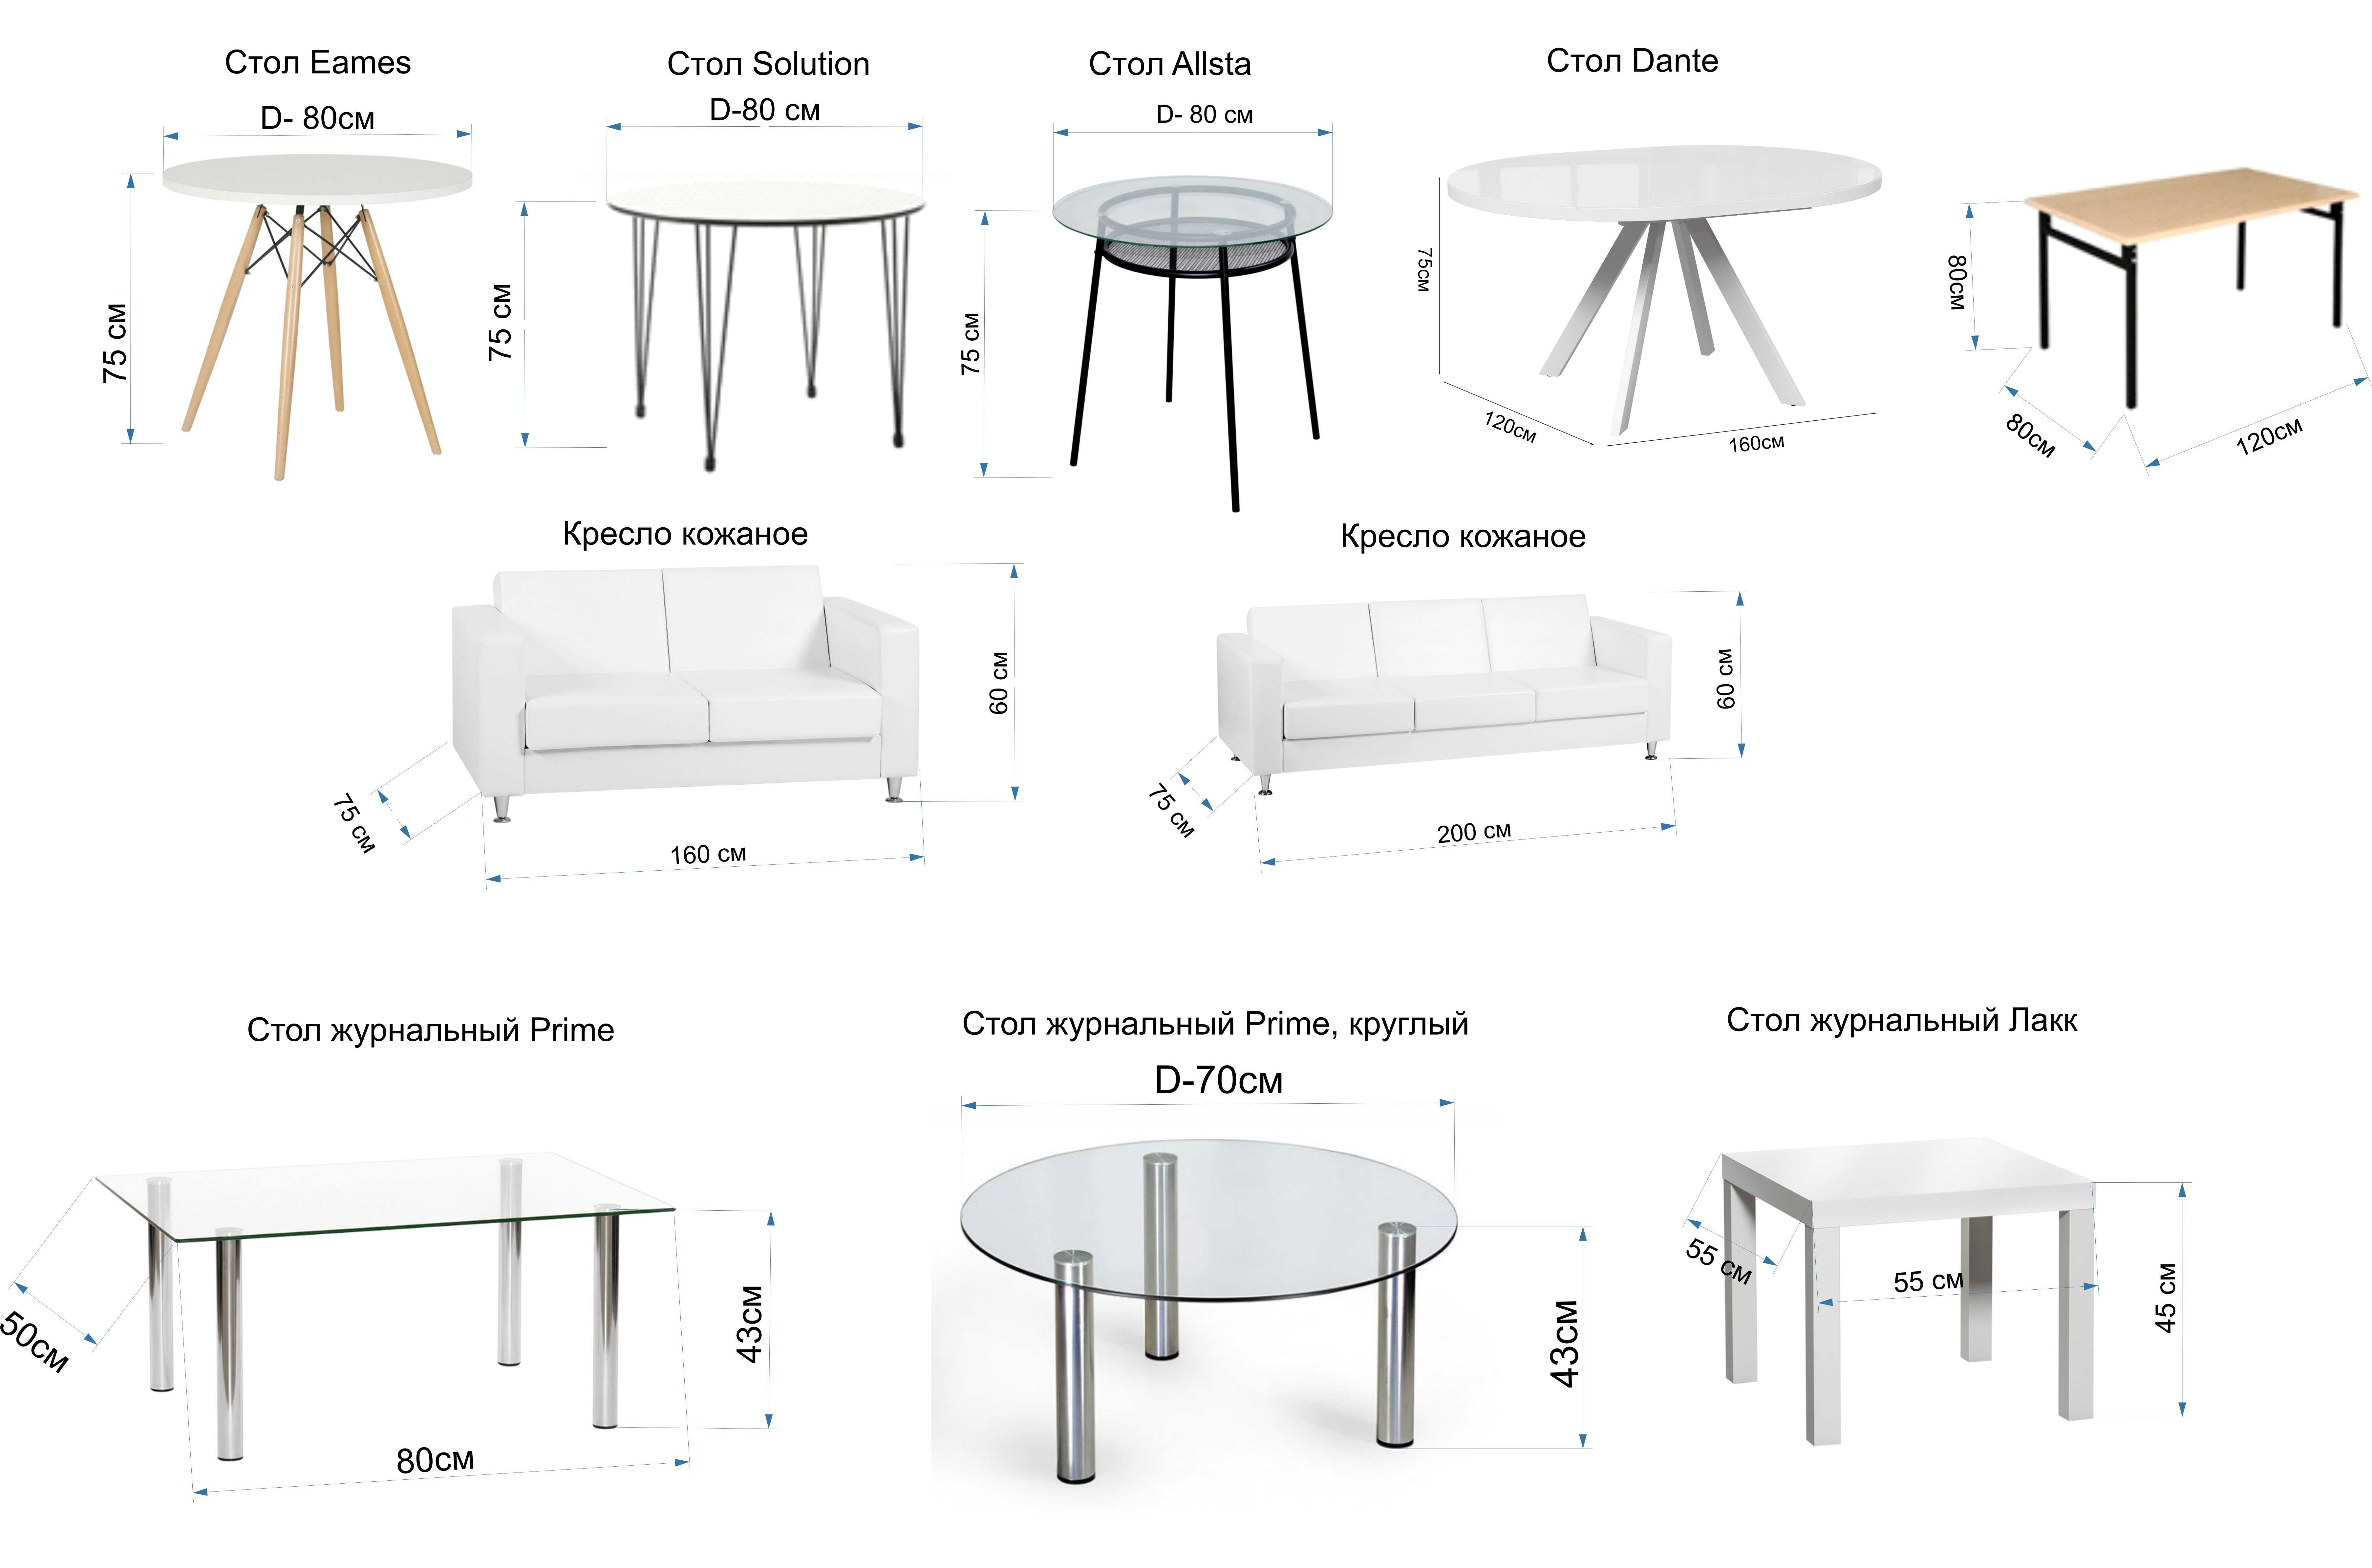 Аренда мебели для мероприятий(столы, стулья, диваны, кресла)